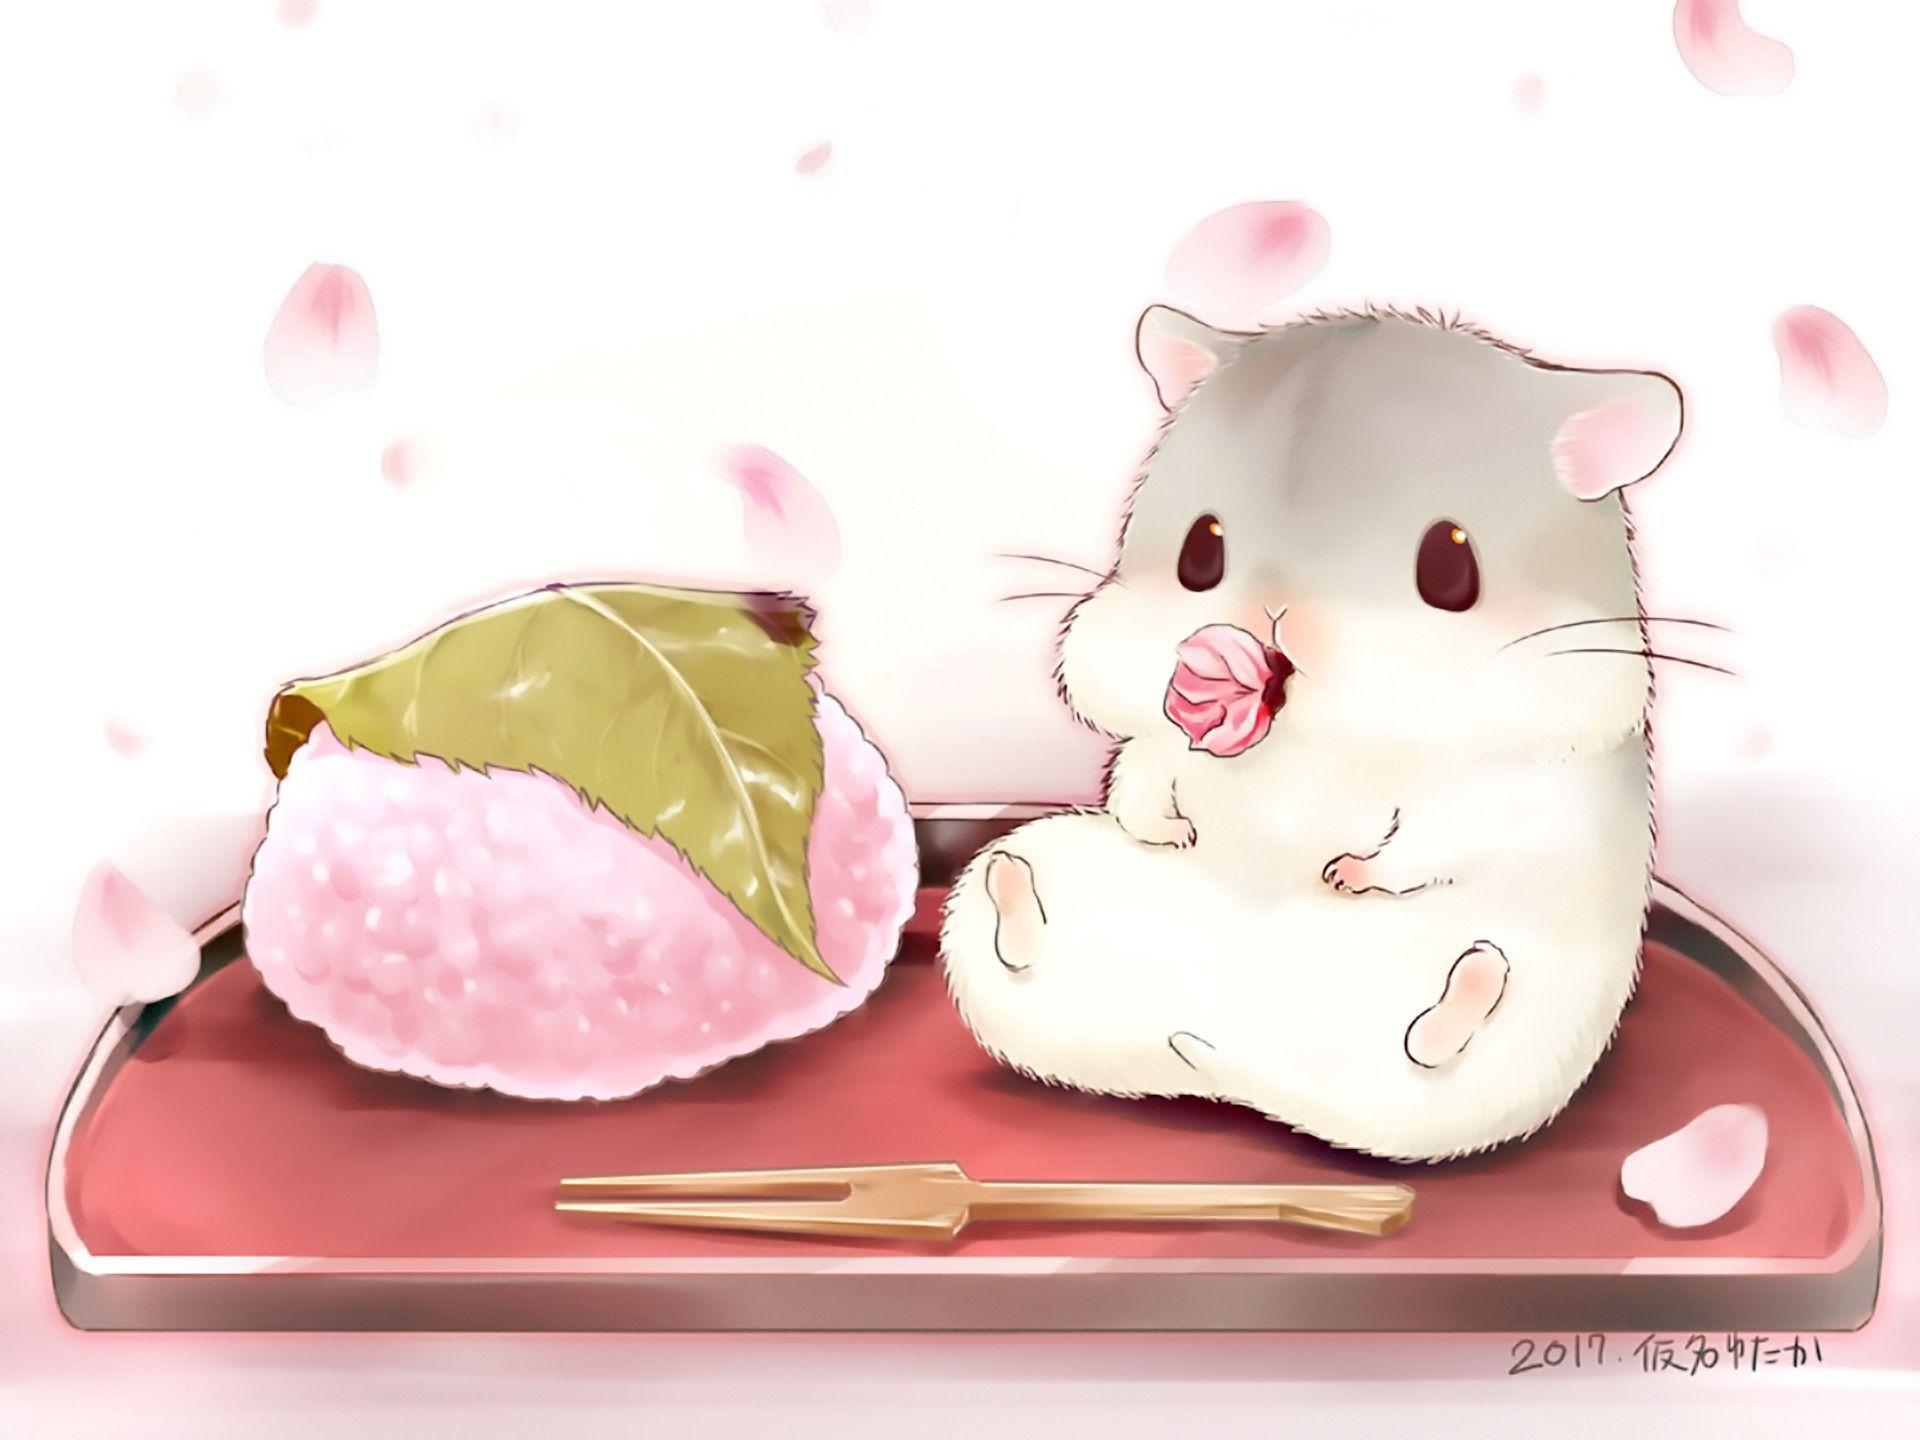 1920x1440 Độ phân giải: 1920x1440, Anime - Hình nền đồ ăn dễ thương cho Hamster gốc